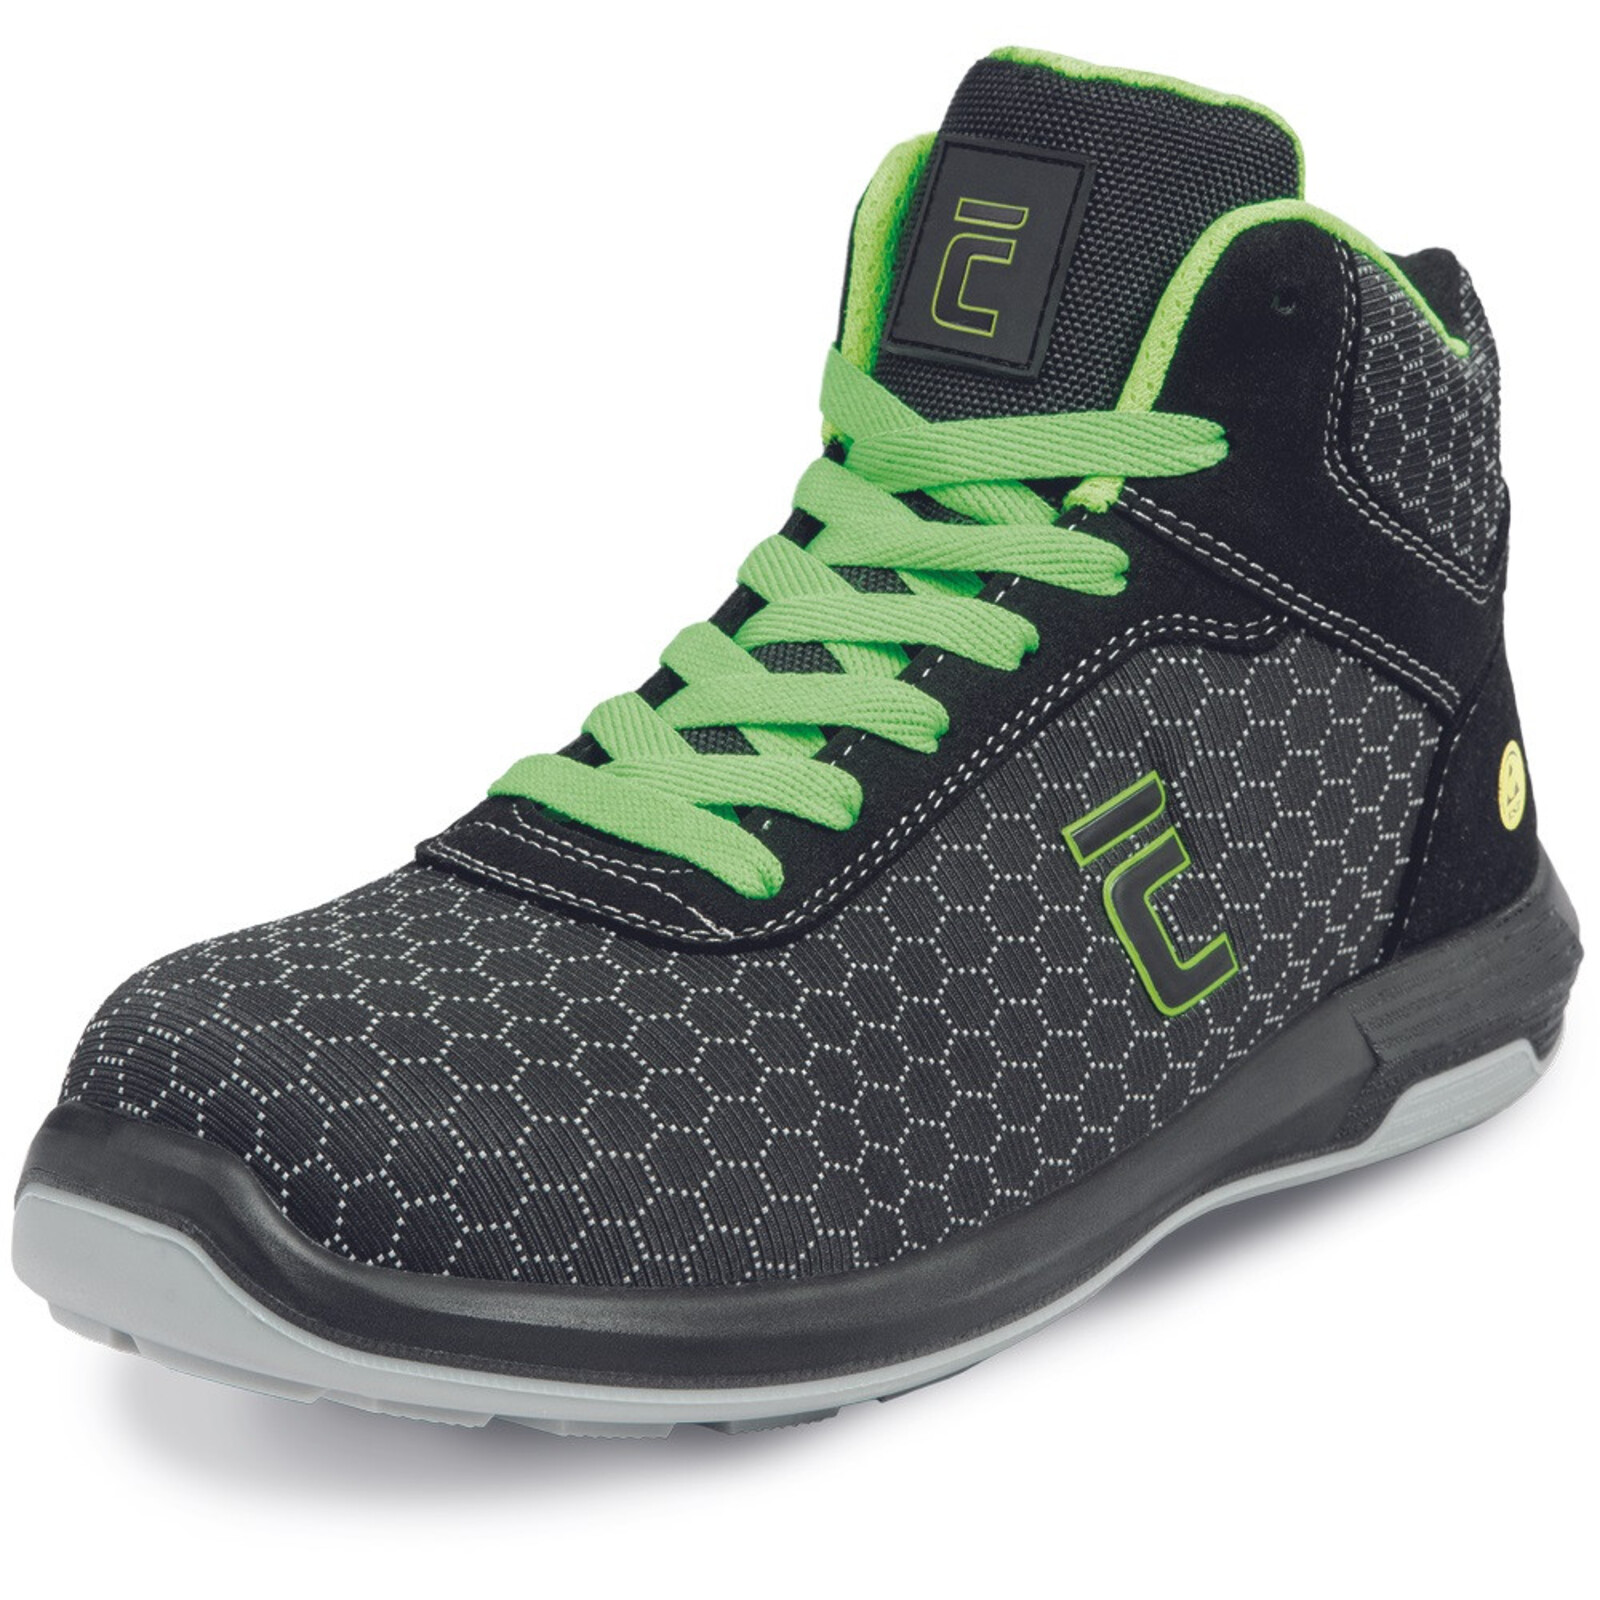 Bezpečnostná členková obuv Cerva Uttendorf MF ESD S3S SR - veľkosť: 38, farba: čierna/zelená